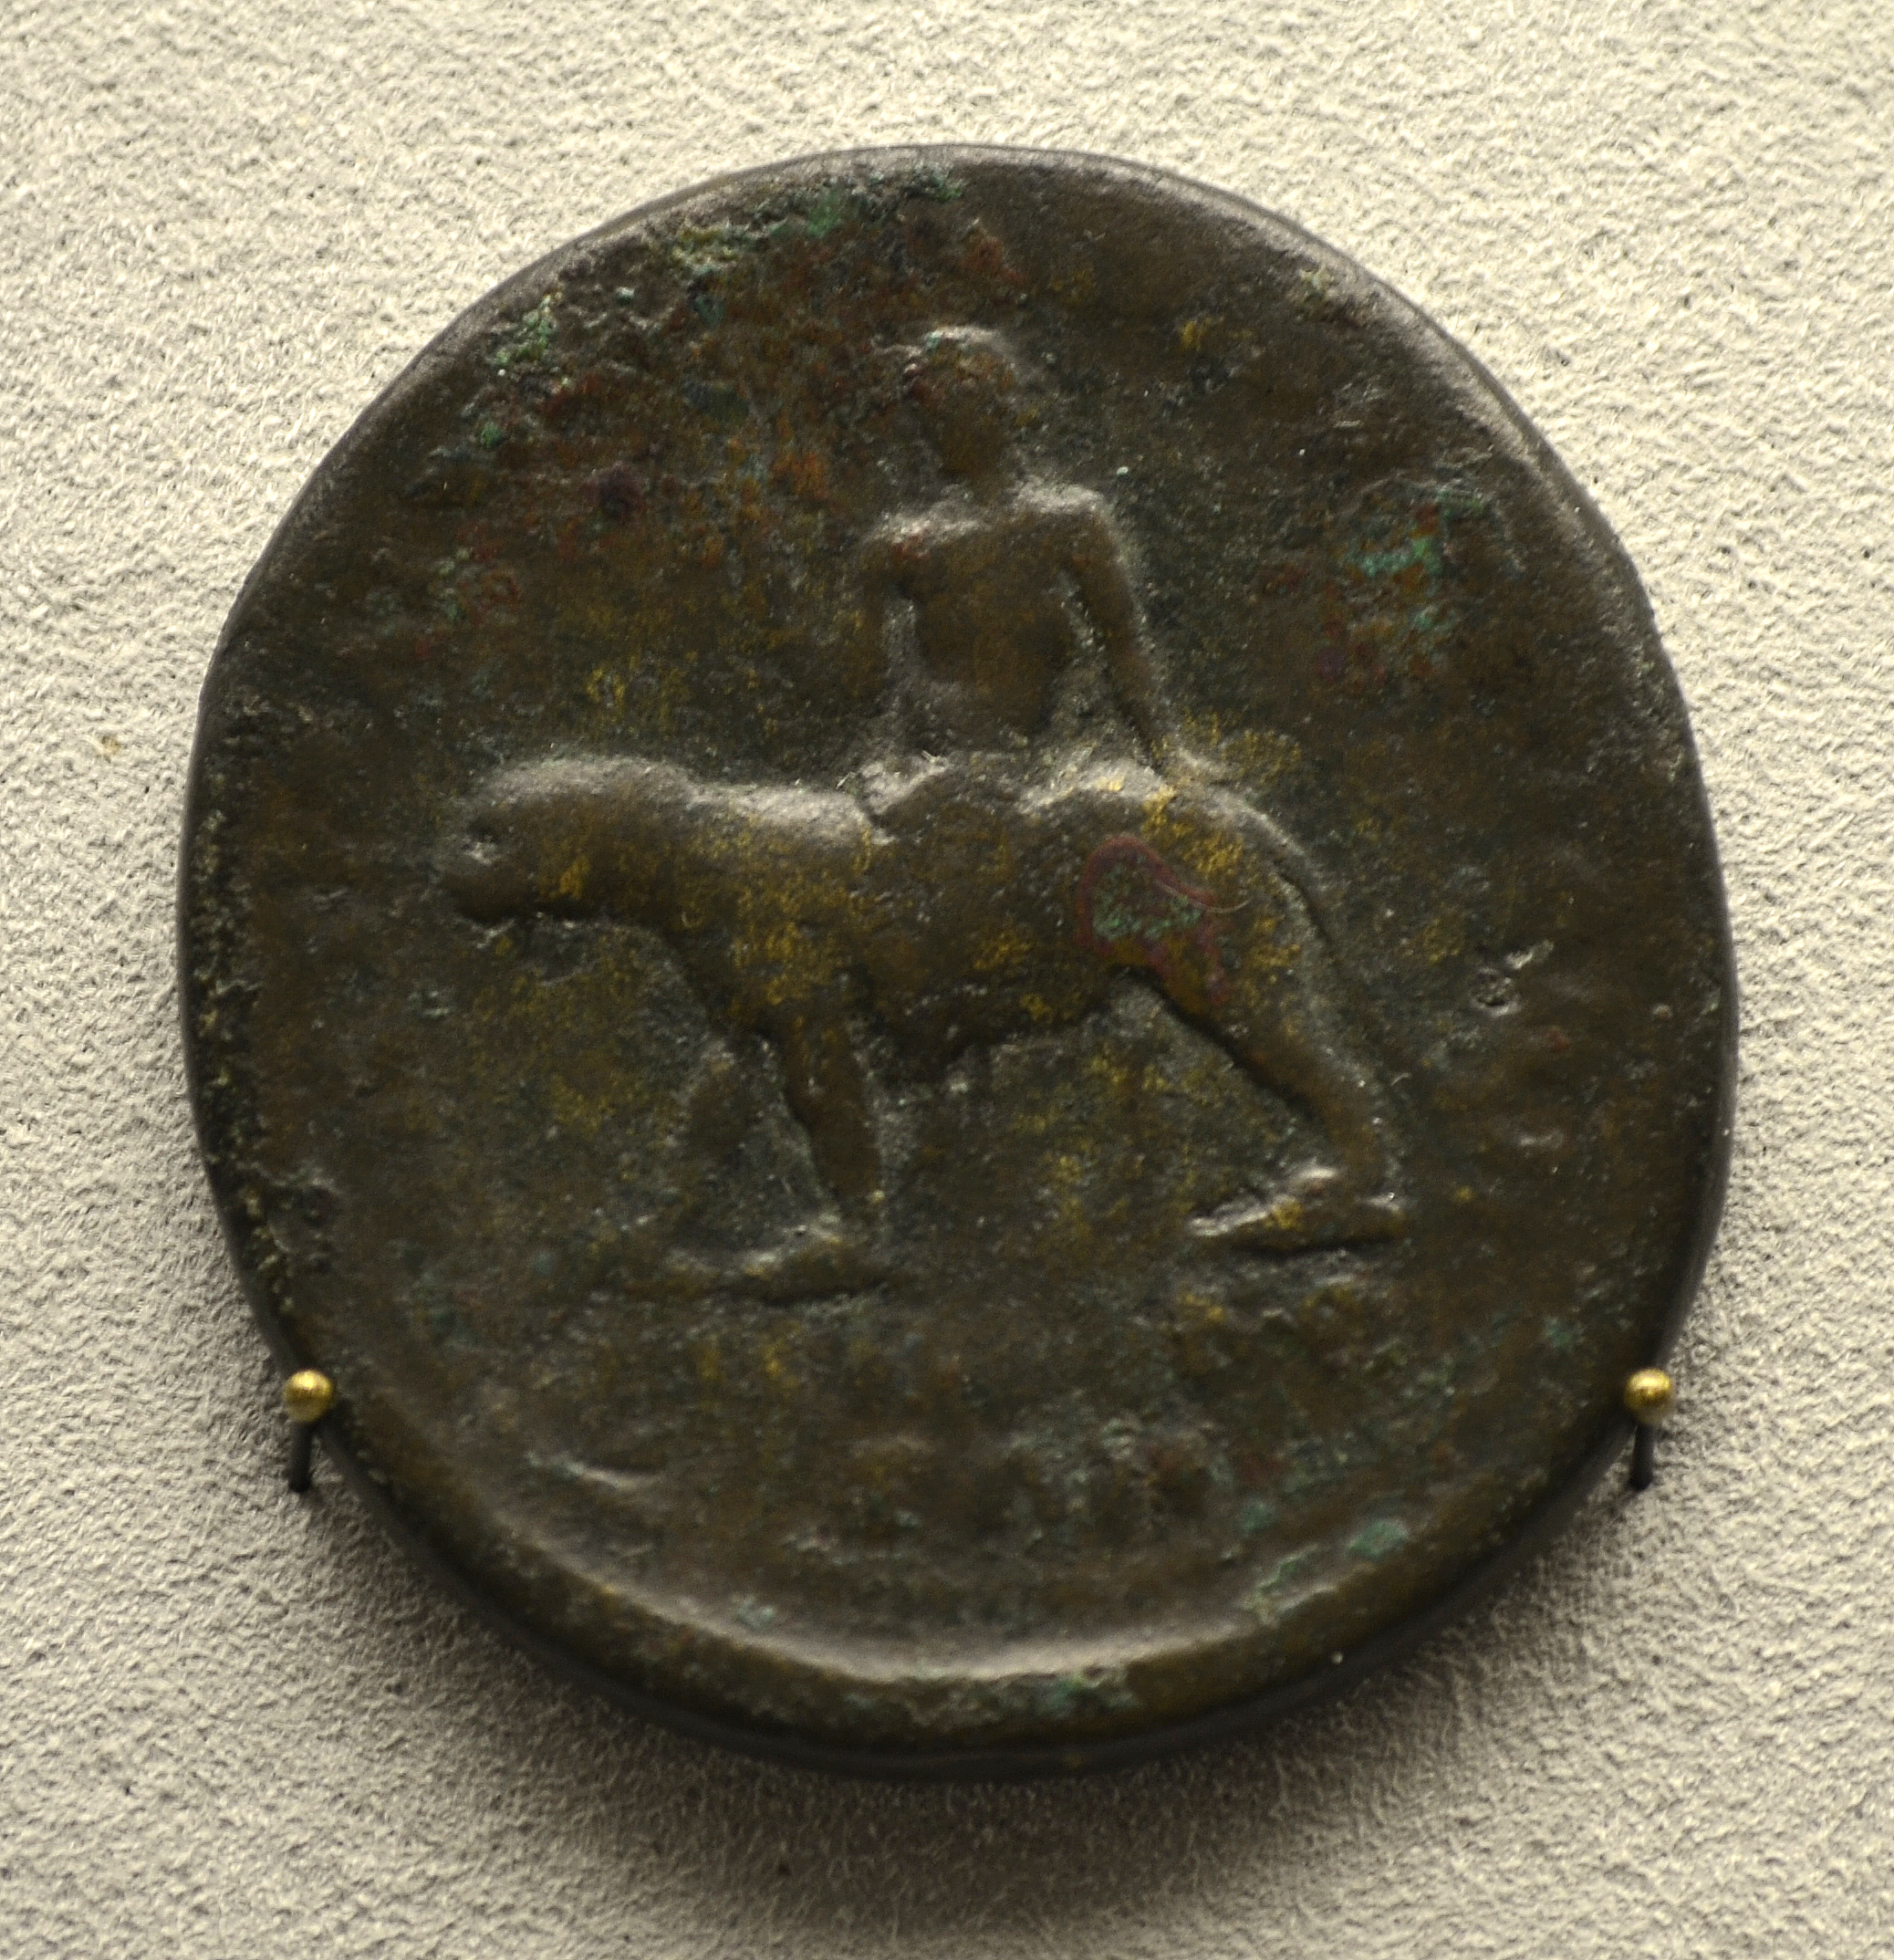 201209071748b Berlin Pergamonmuseum, Bronzemünze mit RS Dyonisos auf Panther, Pergamon, kaiserzeitlich, VS Lucius Verus,.161-169 u.Z